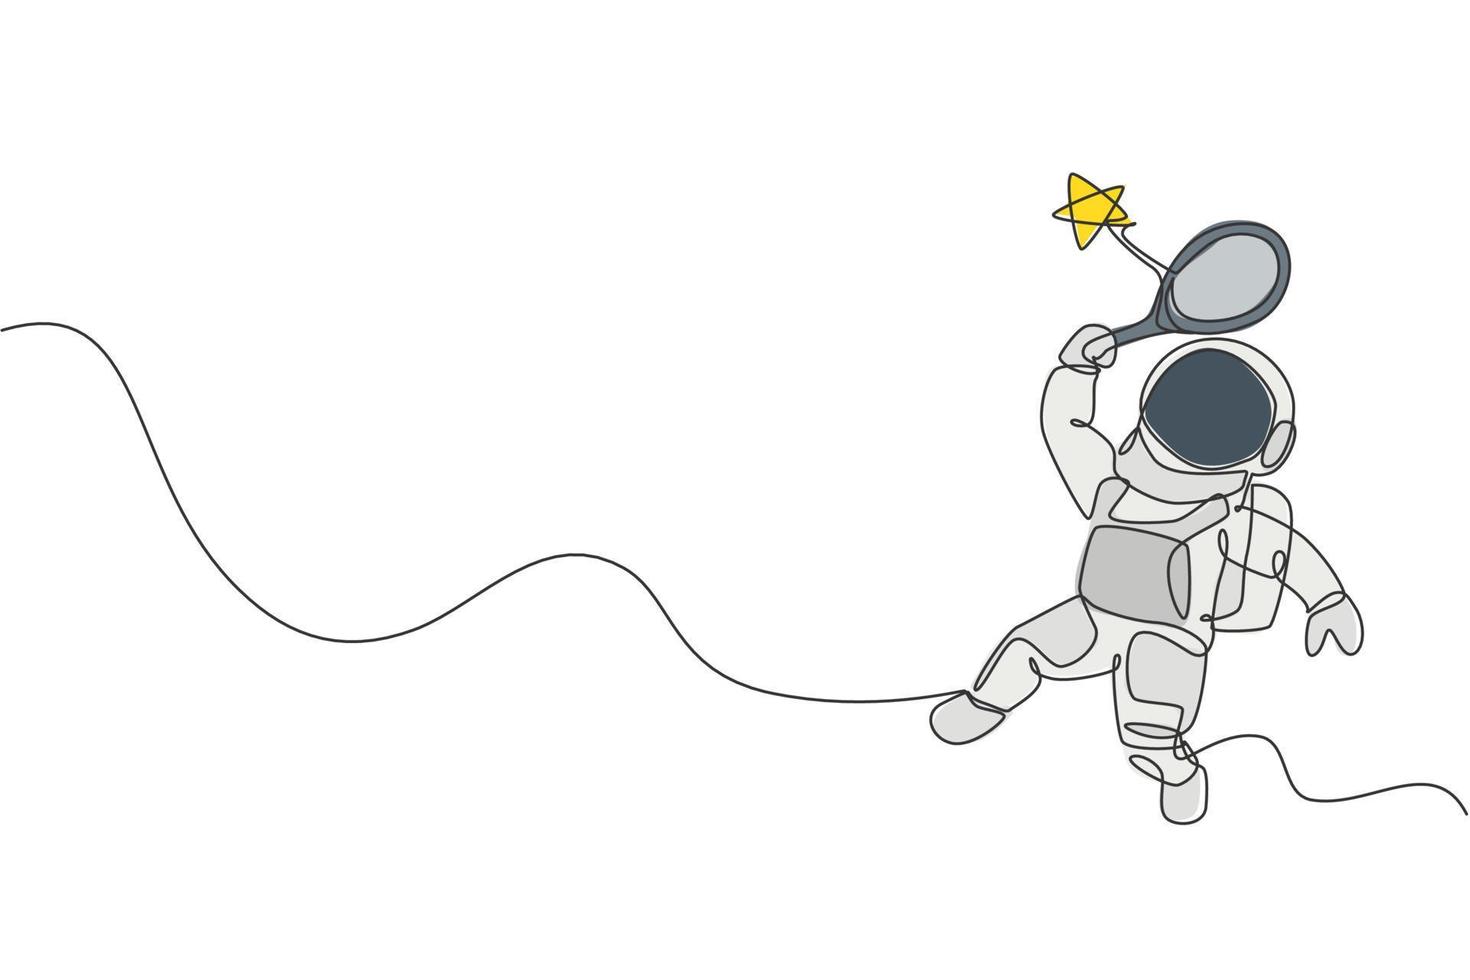 un dibujo de línea continua del cosmonauta explorando el espacio exterior. astronauta golpeando estrella con raqueta. concepto de descubrimiento de galaxias cósmicas de fantasía. Ilustración de vector de diseño gráfico de dibujo de línea única dinámica